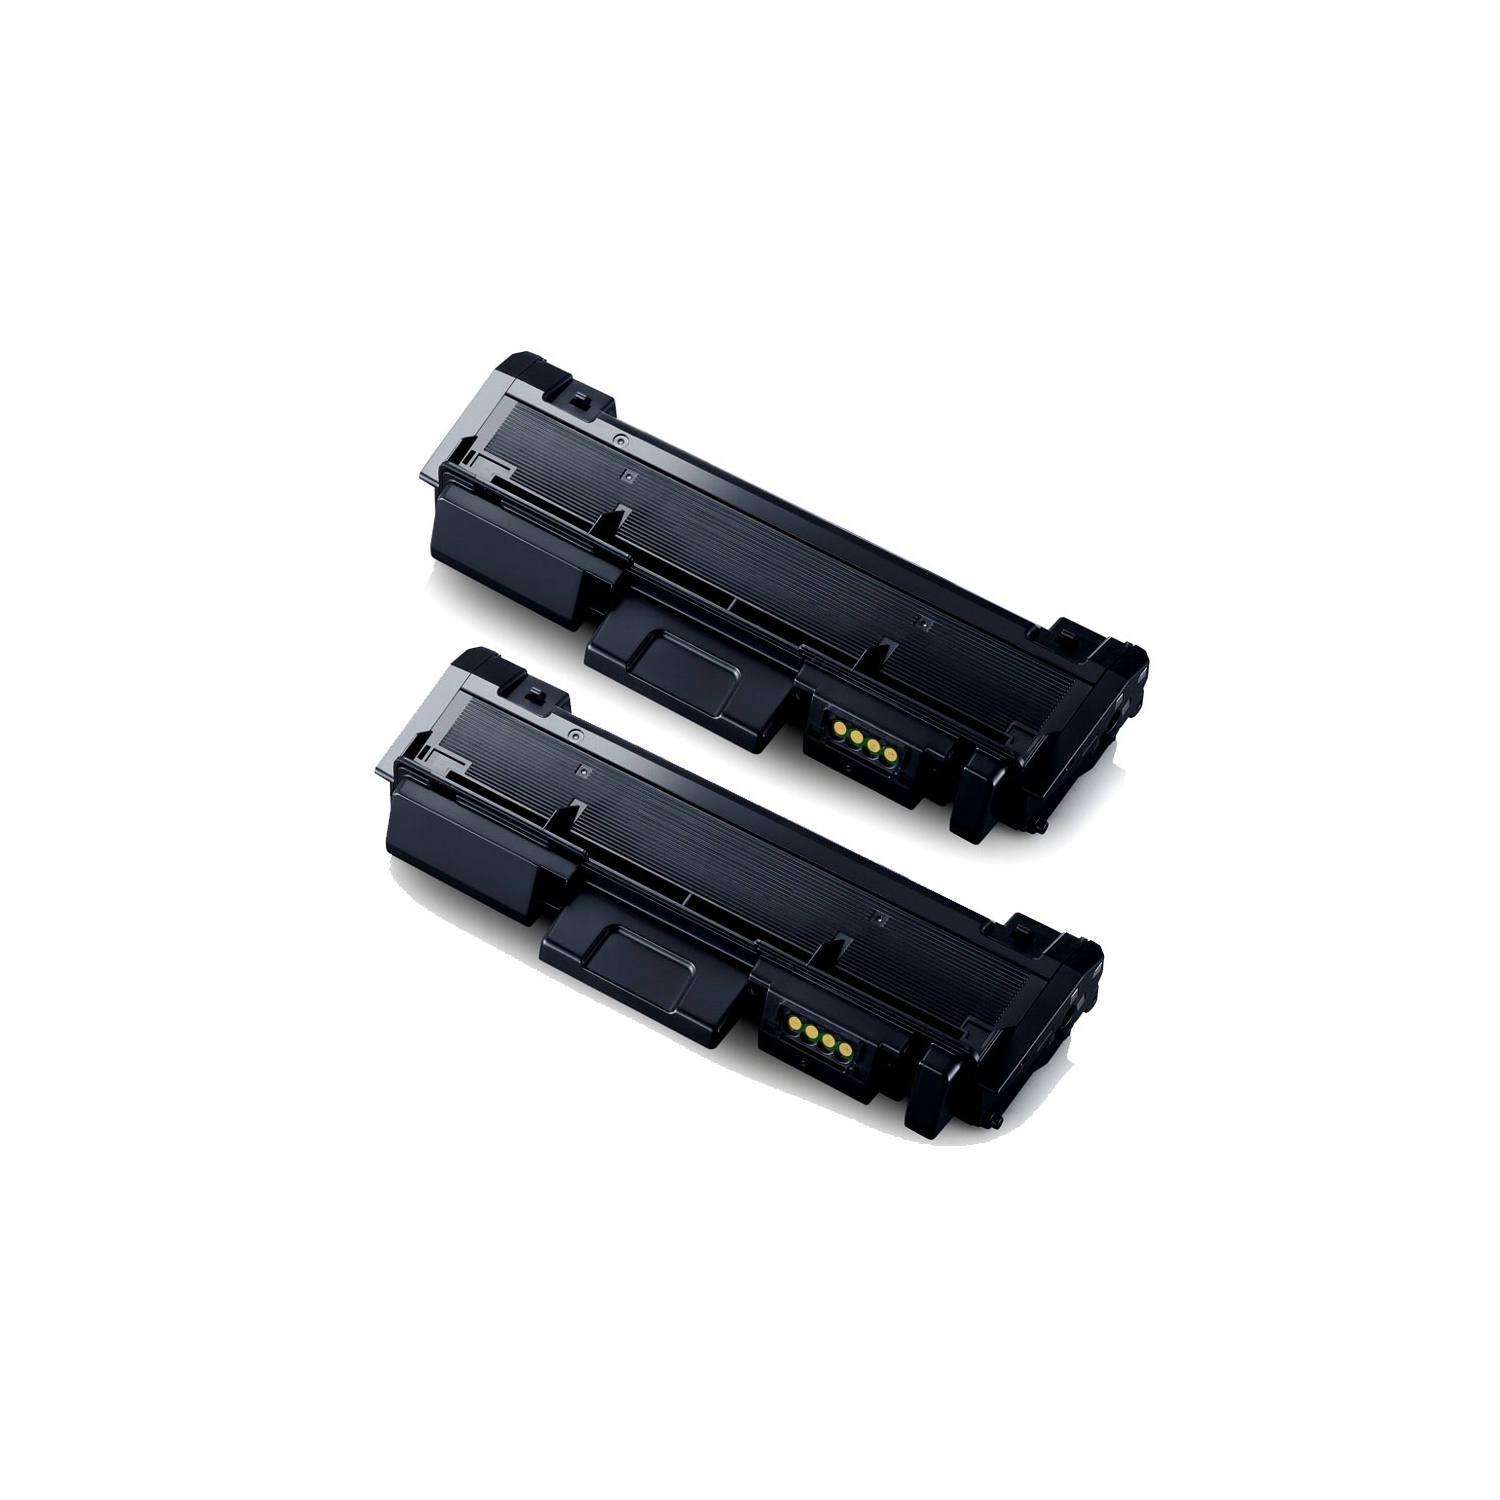 2PK MLT-D116L Compatible Toner Cartridge for Samsung Printer Compatible with: SL-M2625D SL-M2825DW SL-M2875FD SL-M2875FW SL-M2885FW Xpress SL-M2675F. M2835DW Yield: 3,000@5% Coverage